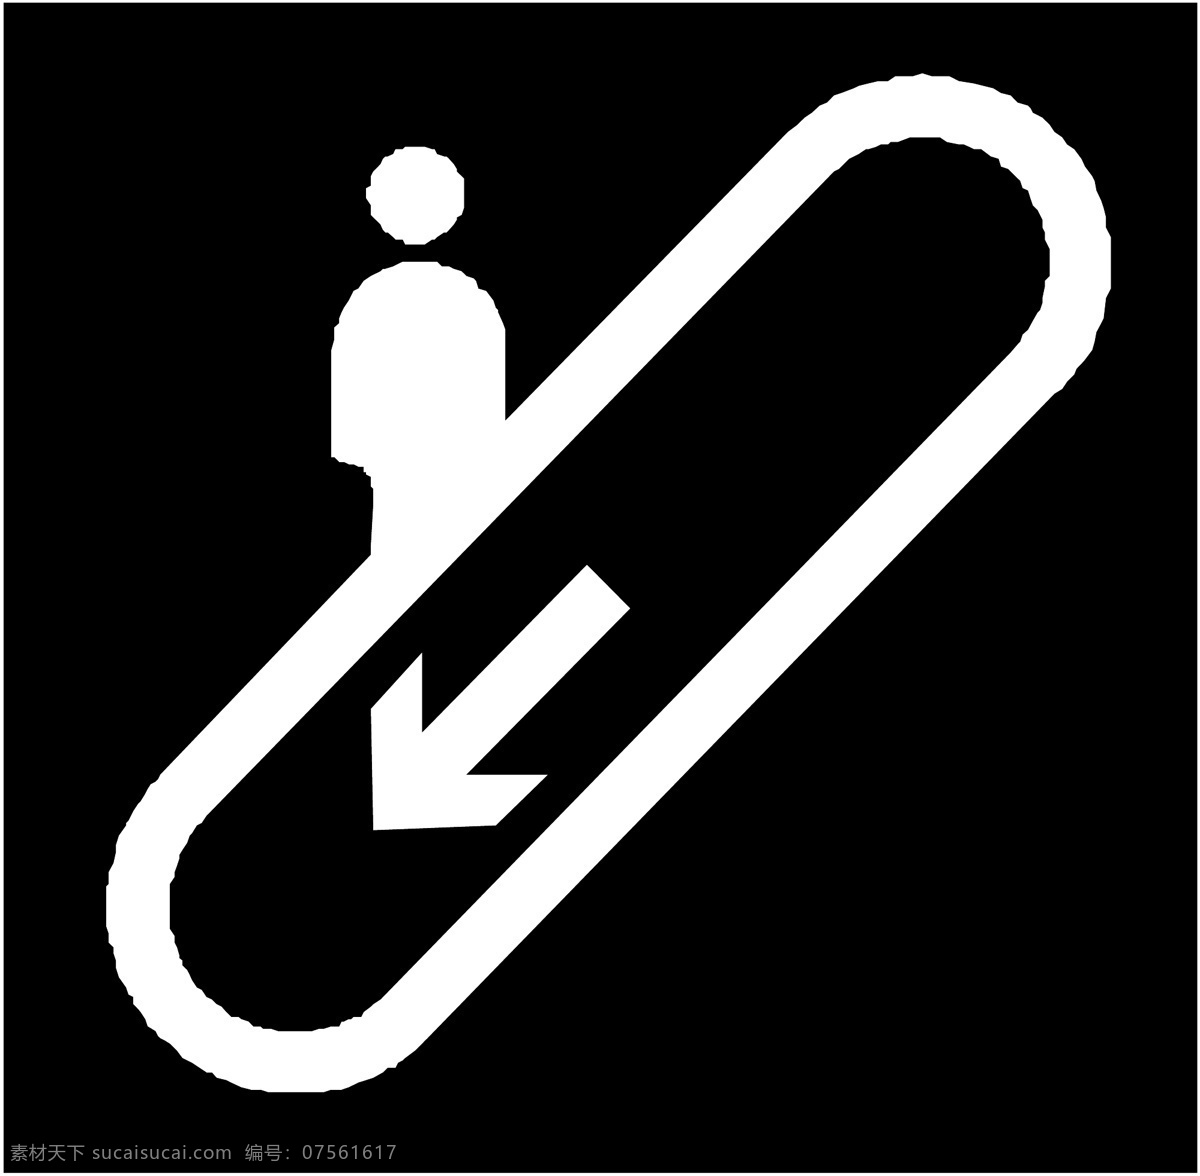 标识 标识标志图标 标志 卡通 矢量图库 示意图 图标 小图标 指示牌 向下 电梯 矢量 模板下载 向下电梯标识 示意牌 指示图 图标标识 psd源文件